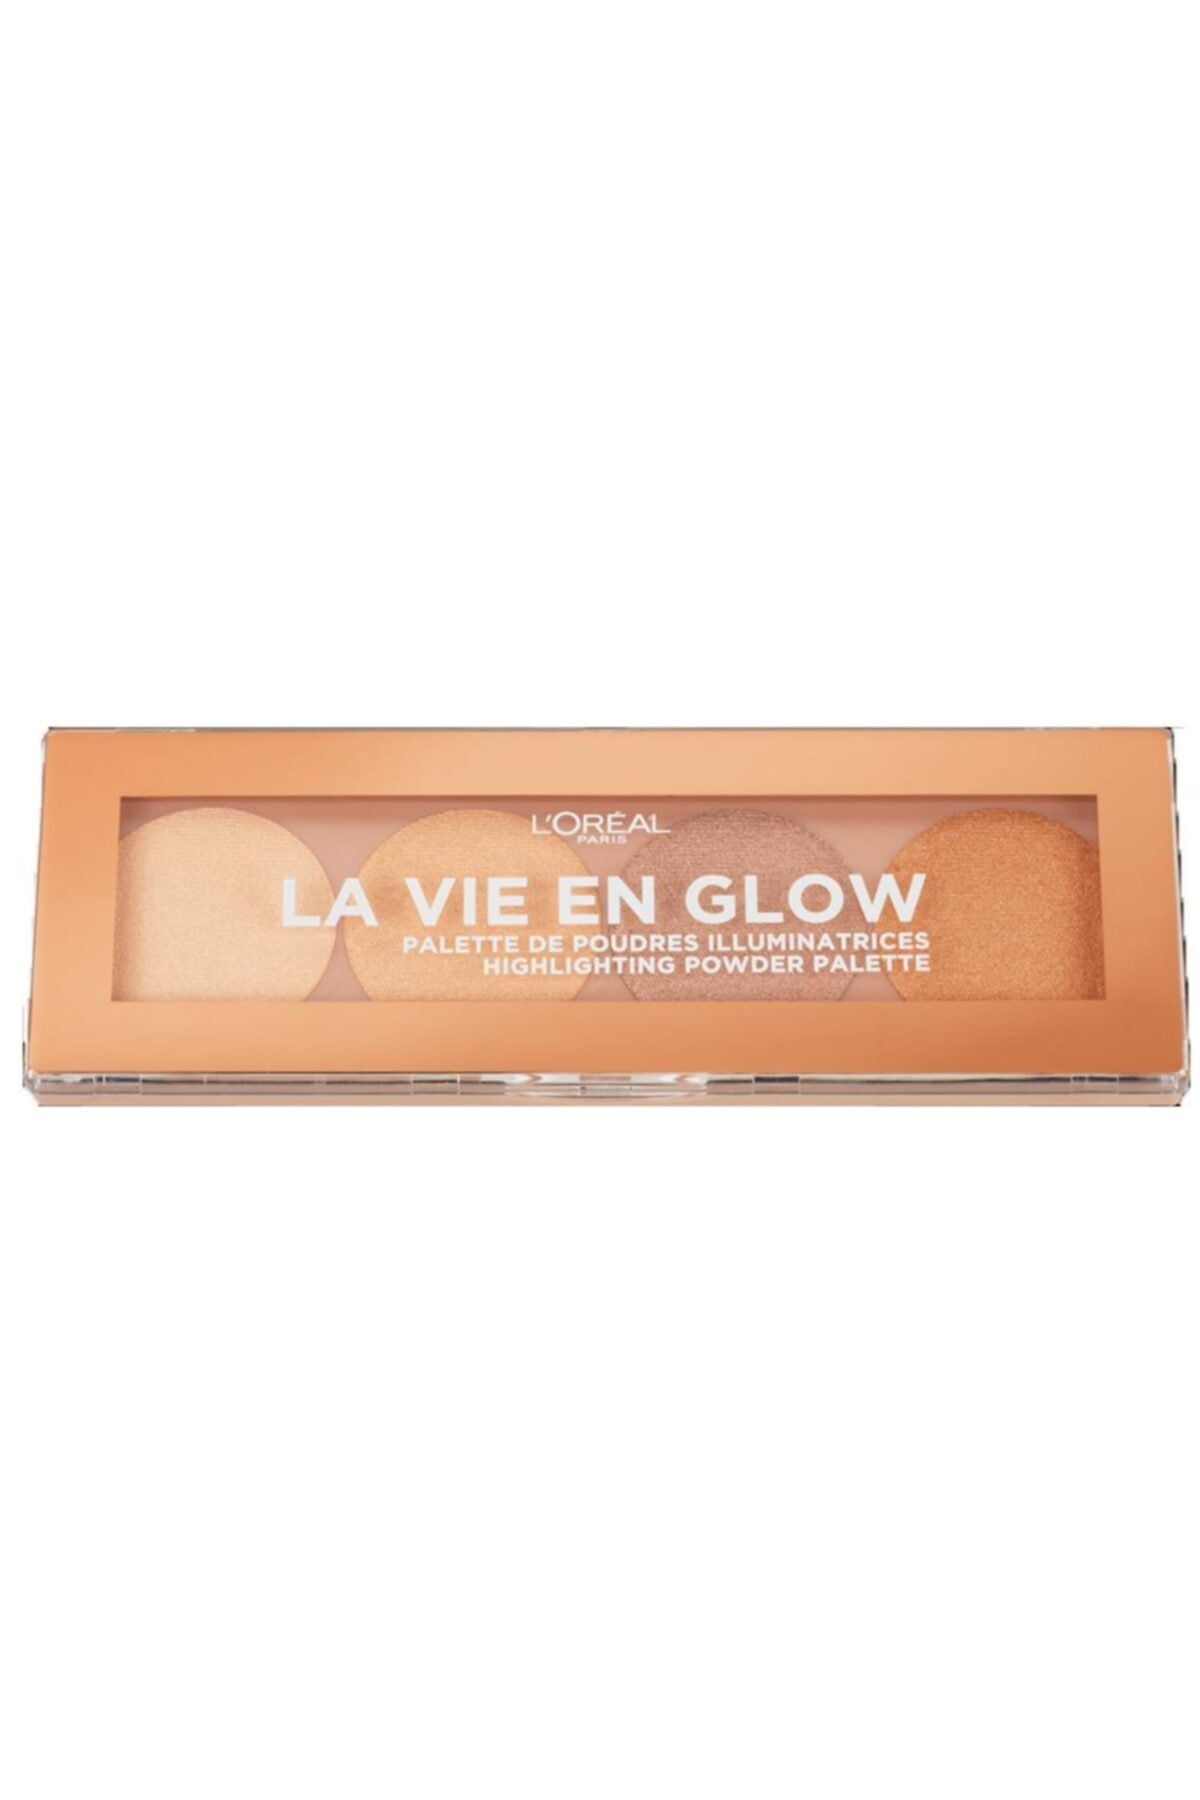 L'Oreal Paris La Vie En Glow Highlighting Powder Palette No:01 Warm Glow